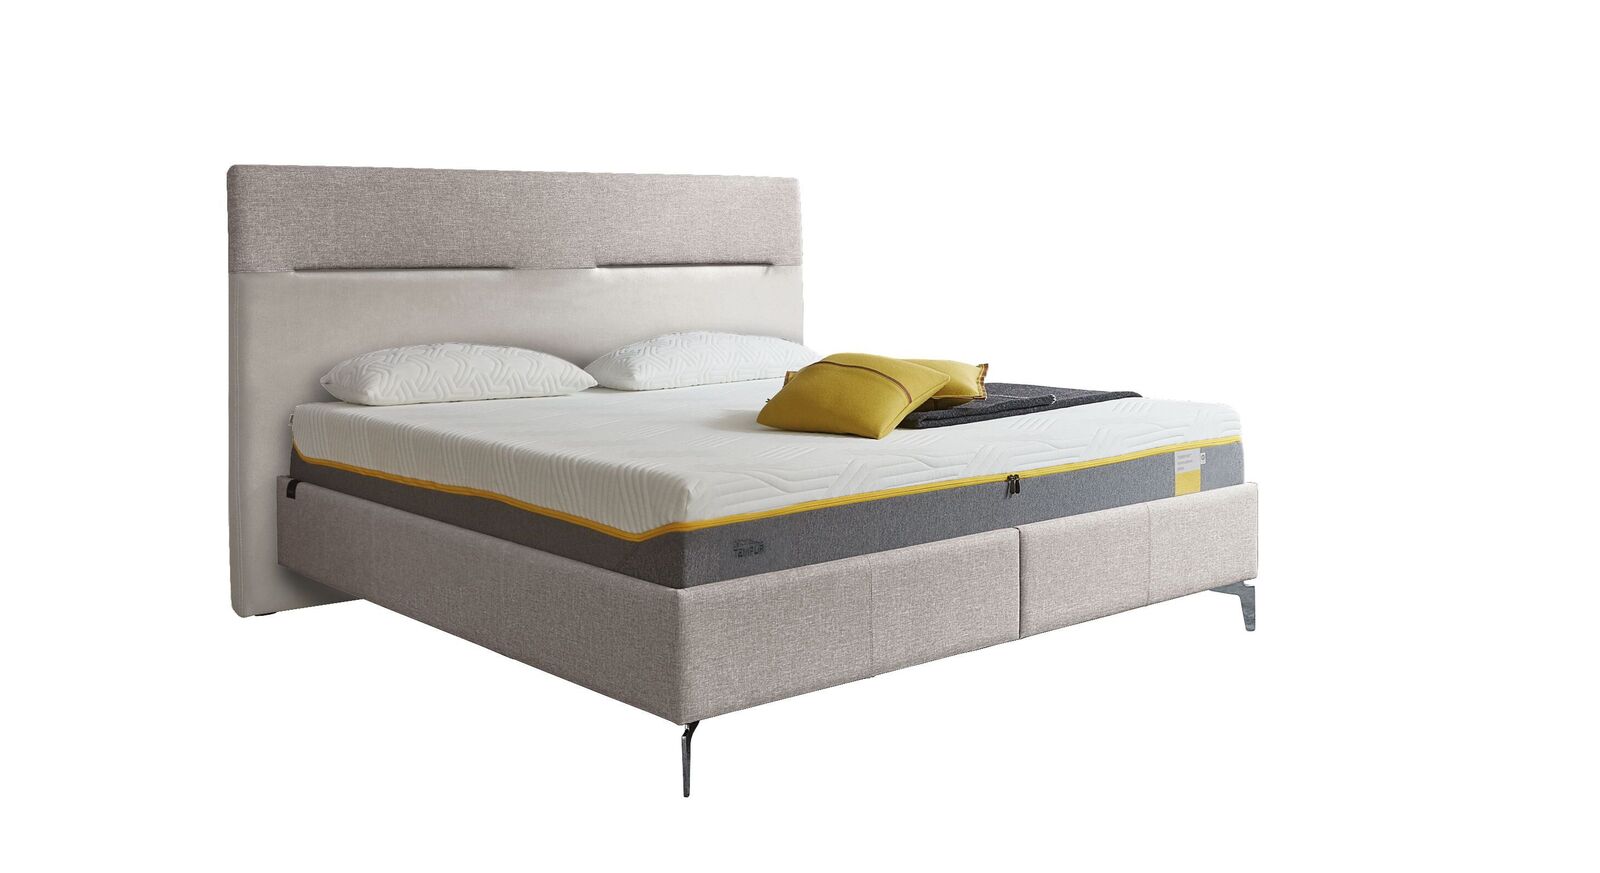 TEMPUR Bett Relax Texture mit Bezug in Webstoff und Kunstleder in Weiß